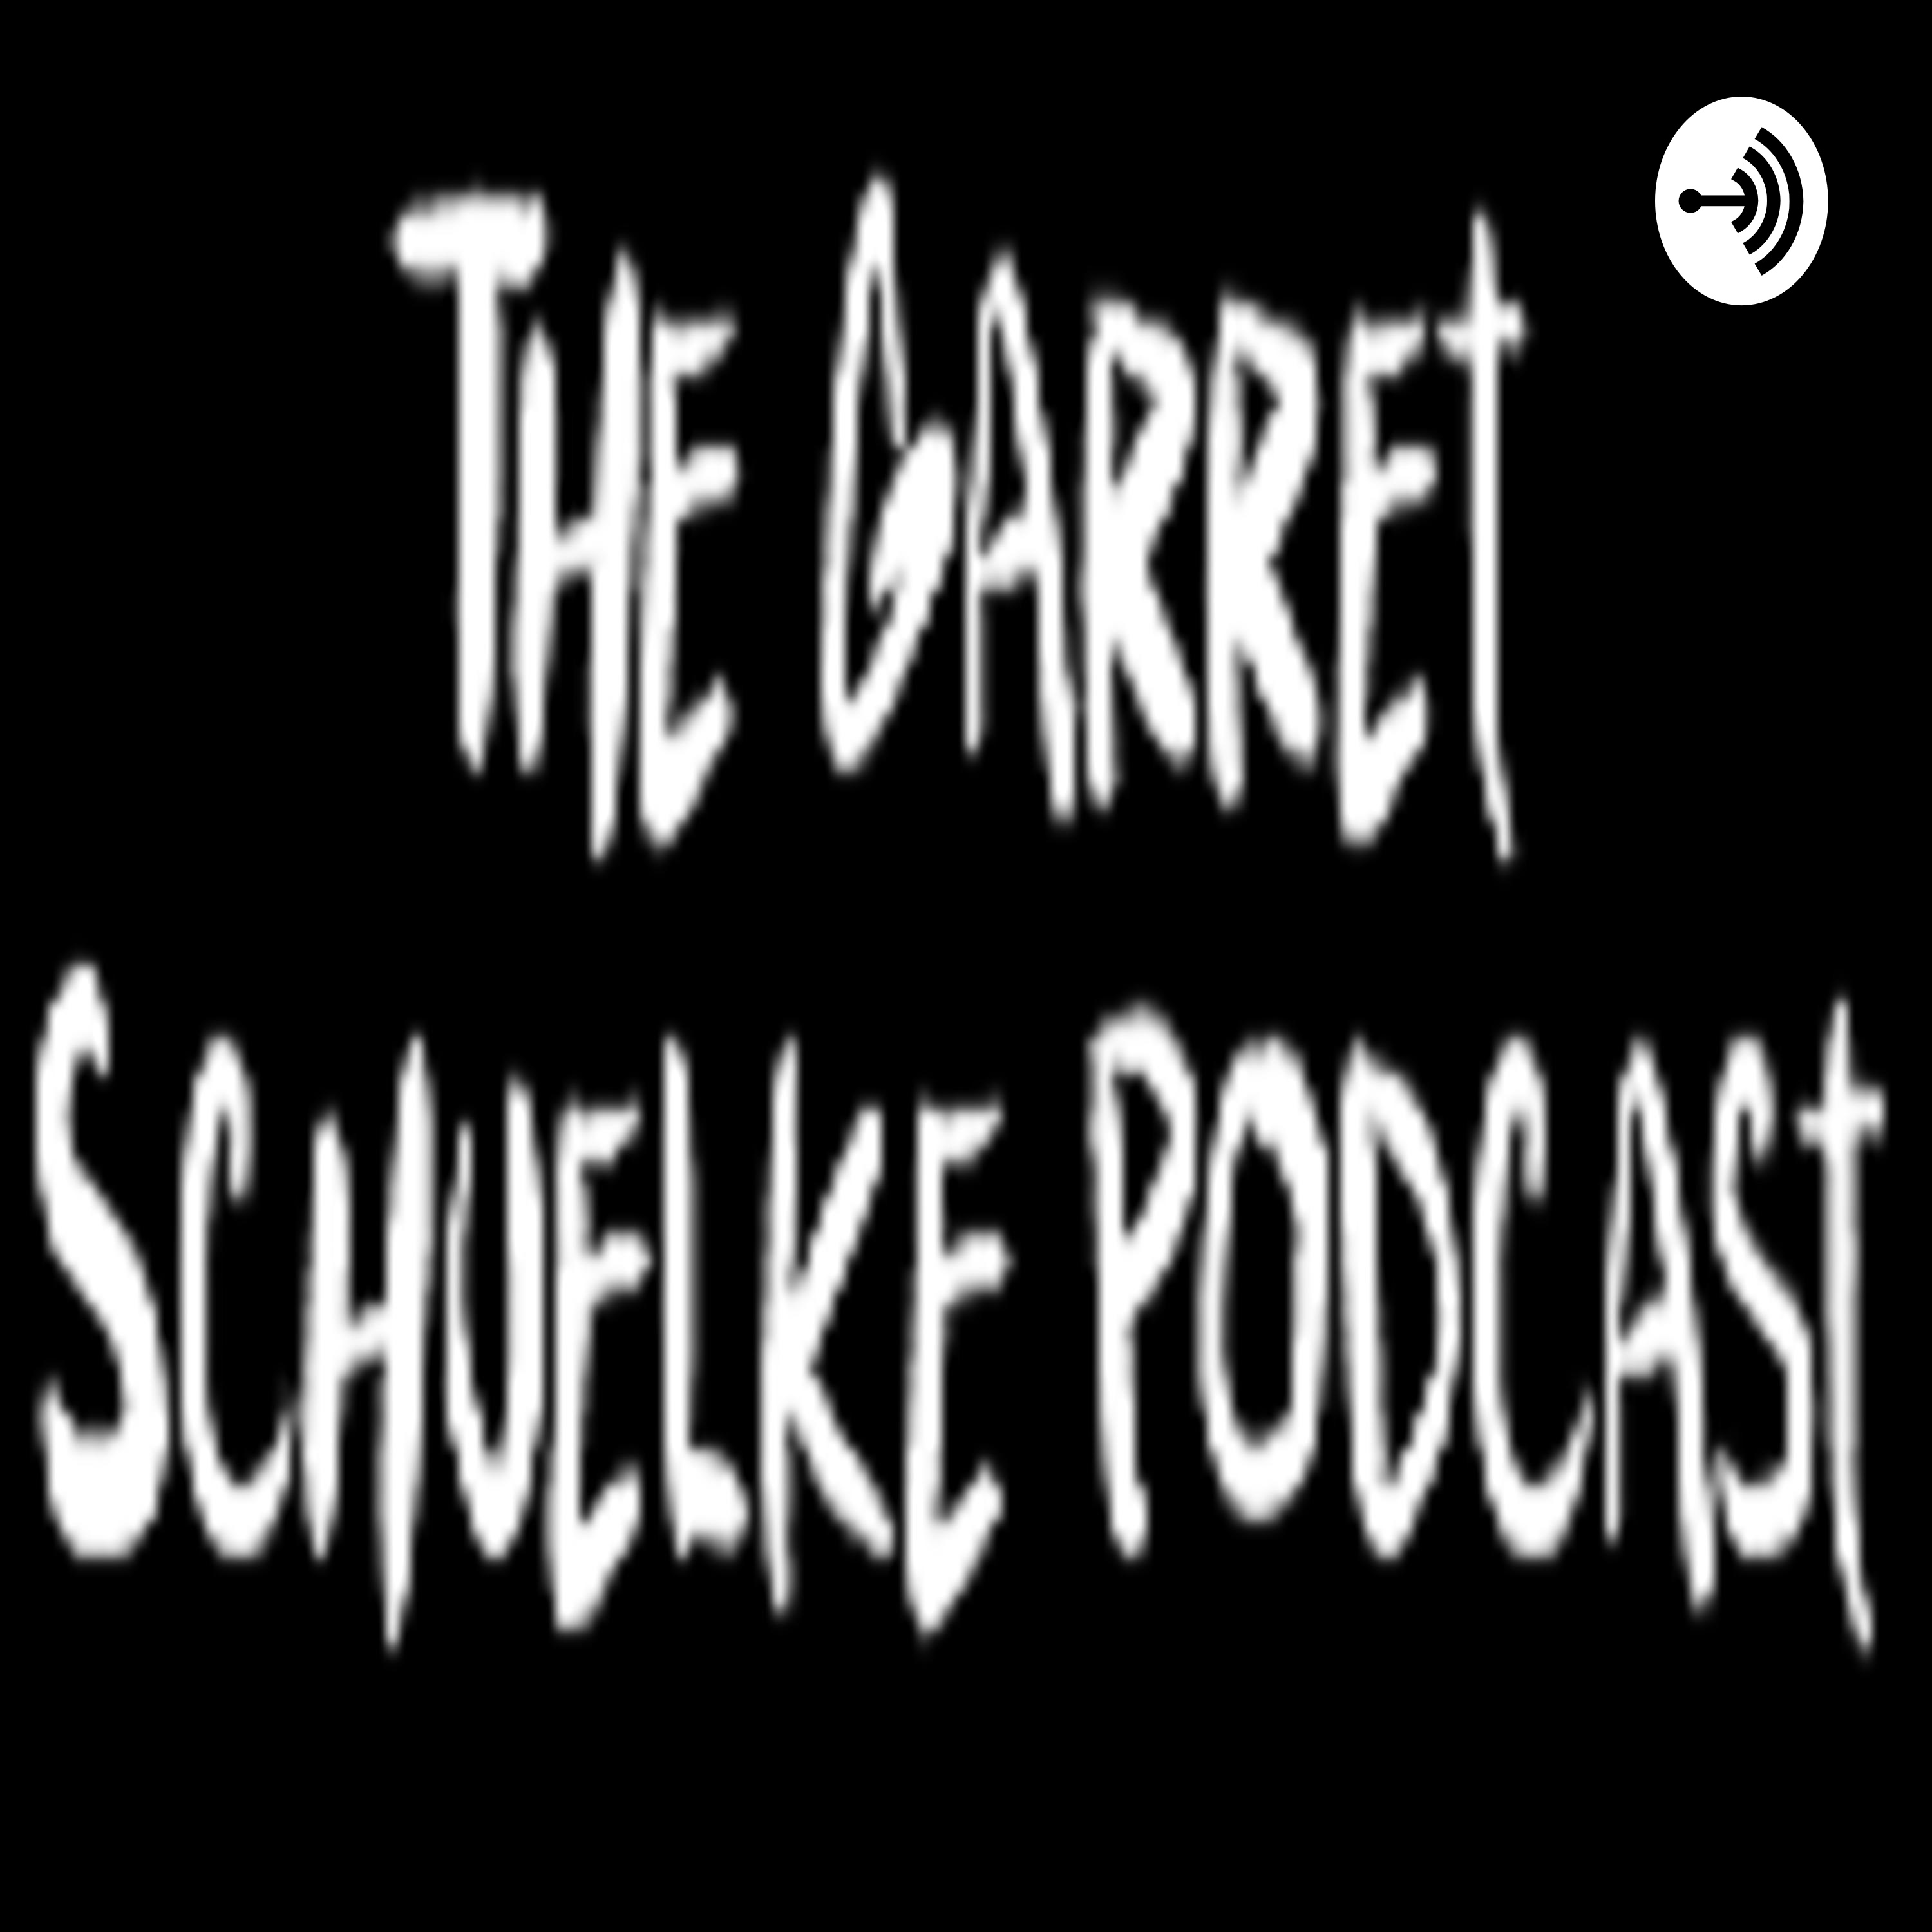 The Garret Schuelke Podcast Episode 21: Give Life Back to Memes with Joel Oliver